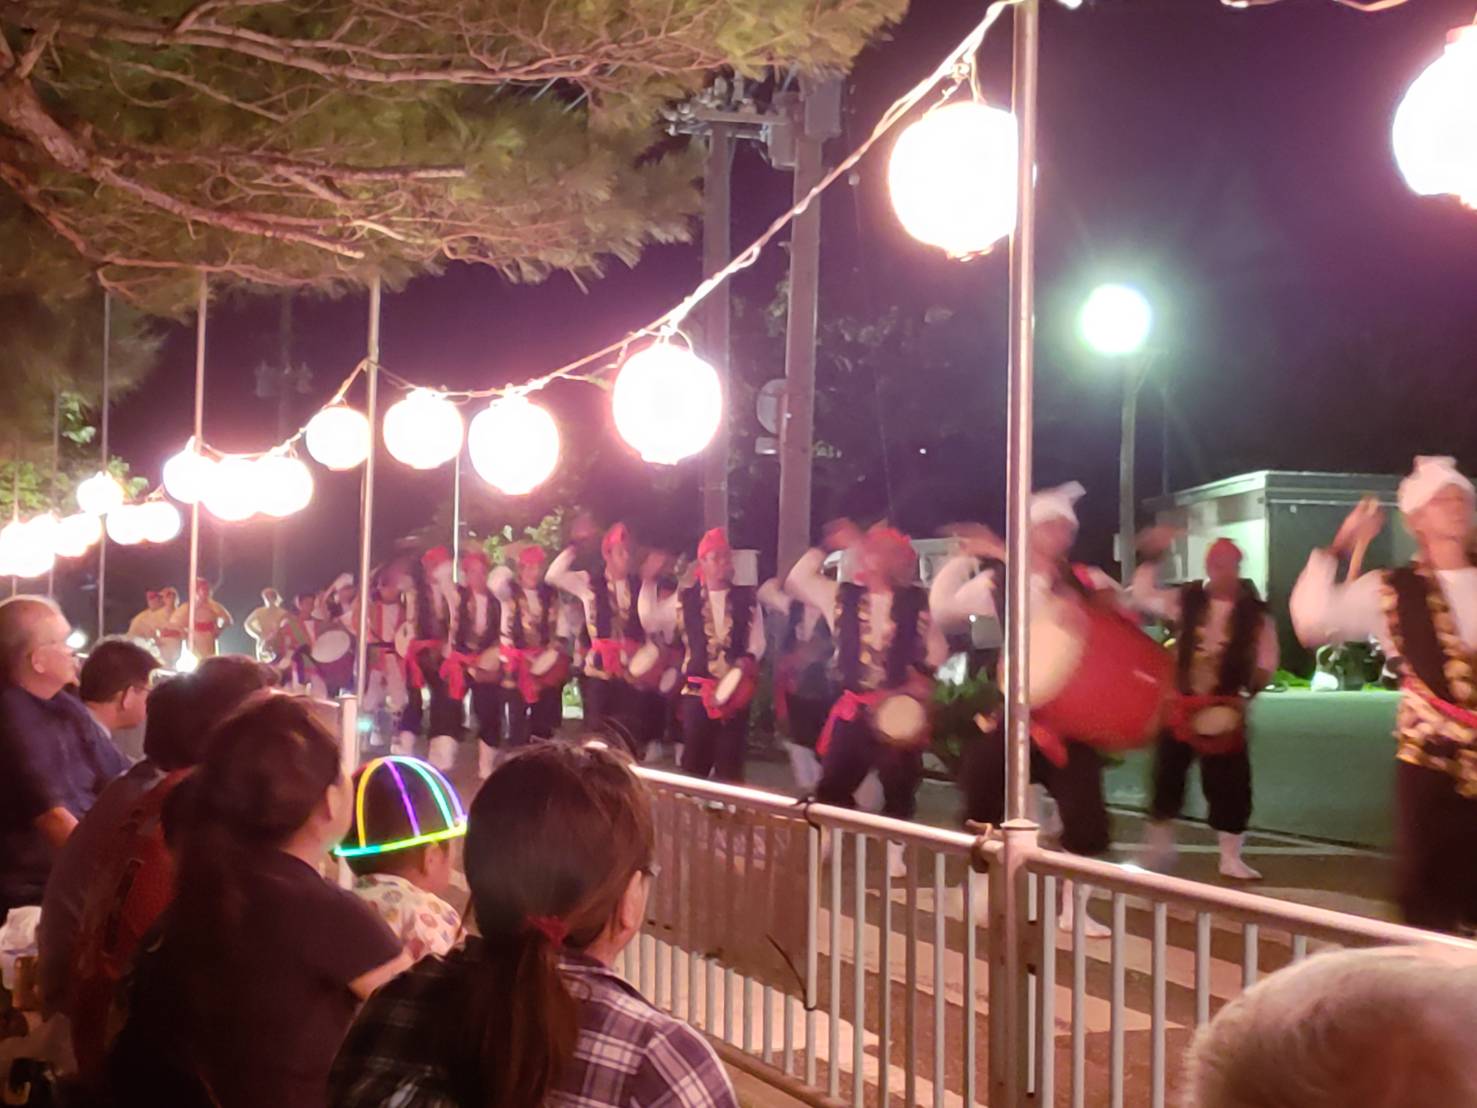 文化の融合する北大東村ならではの旧盆行事「エイサー&盆踊り」